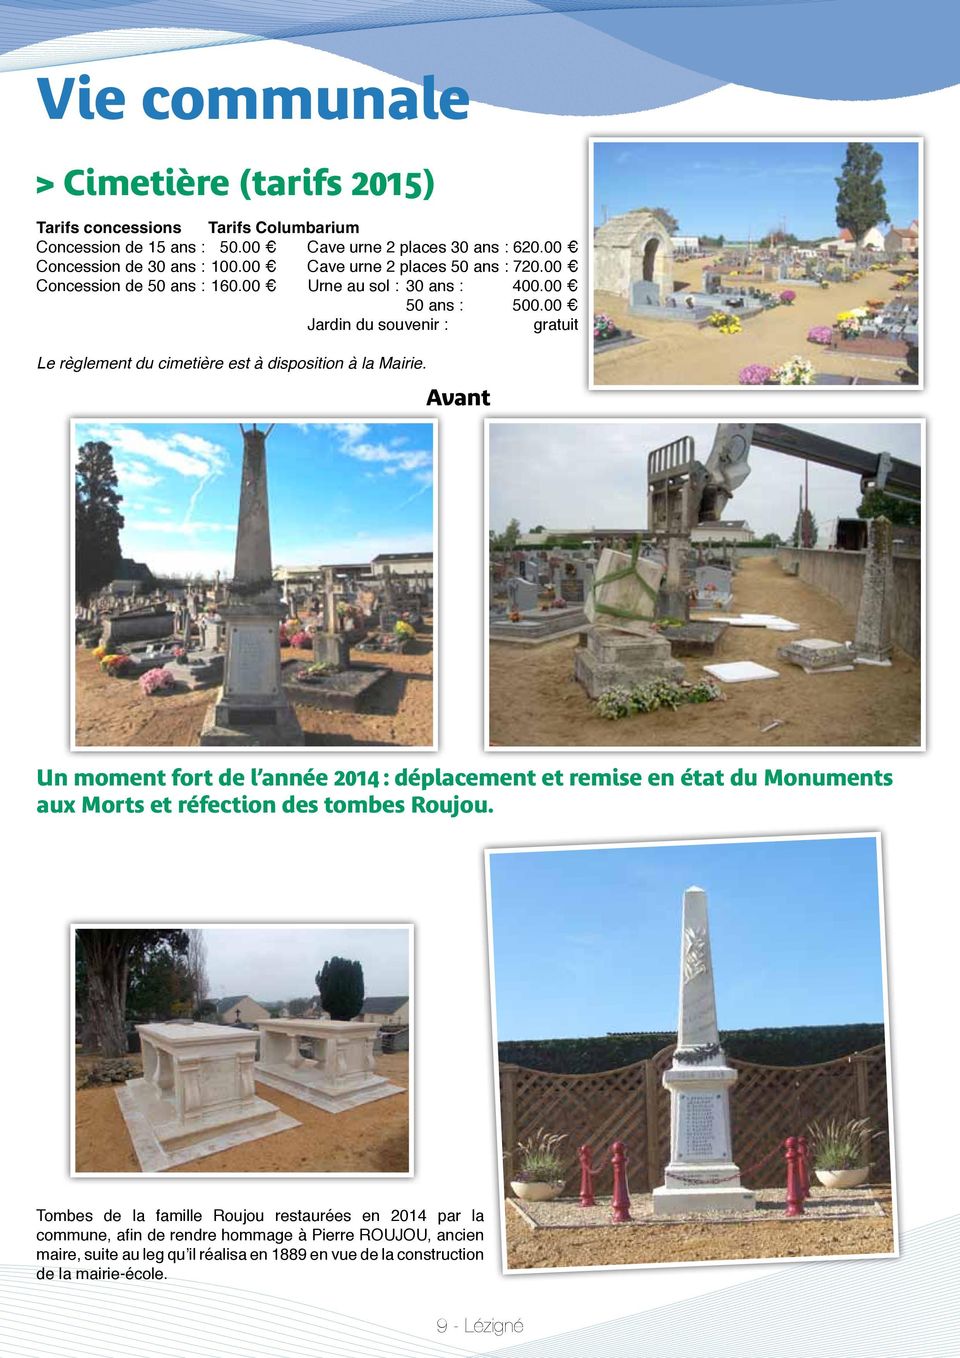 00 Jardin du souvenir : gratuit Le règlement du cimetière est à disposition à la Mairie.